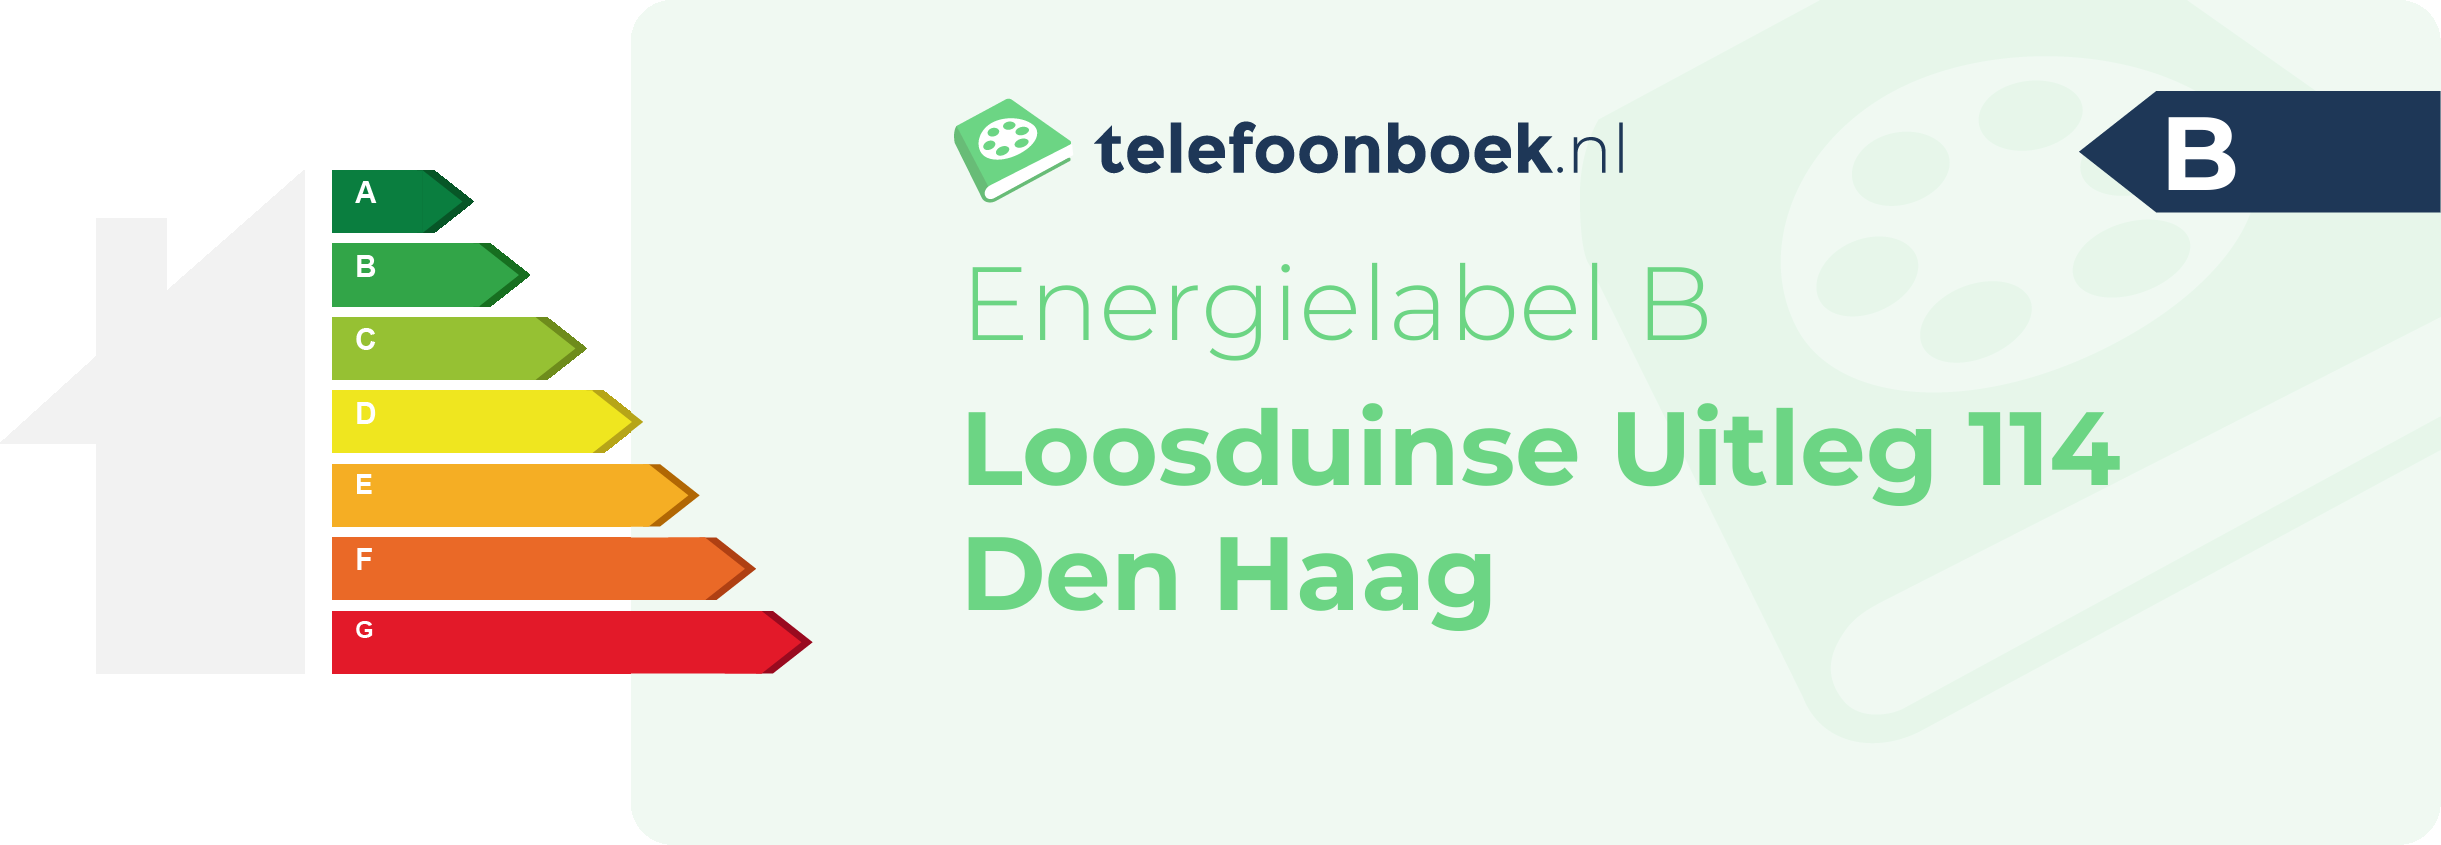 Energielabel Loosduinse Uitleg 114 Den Haag